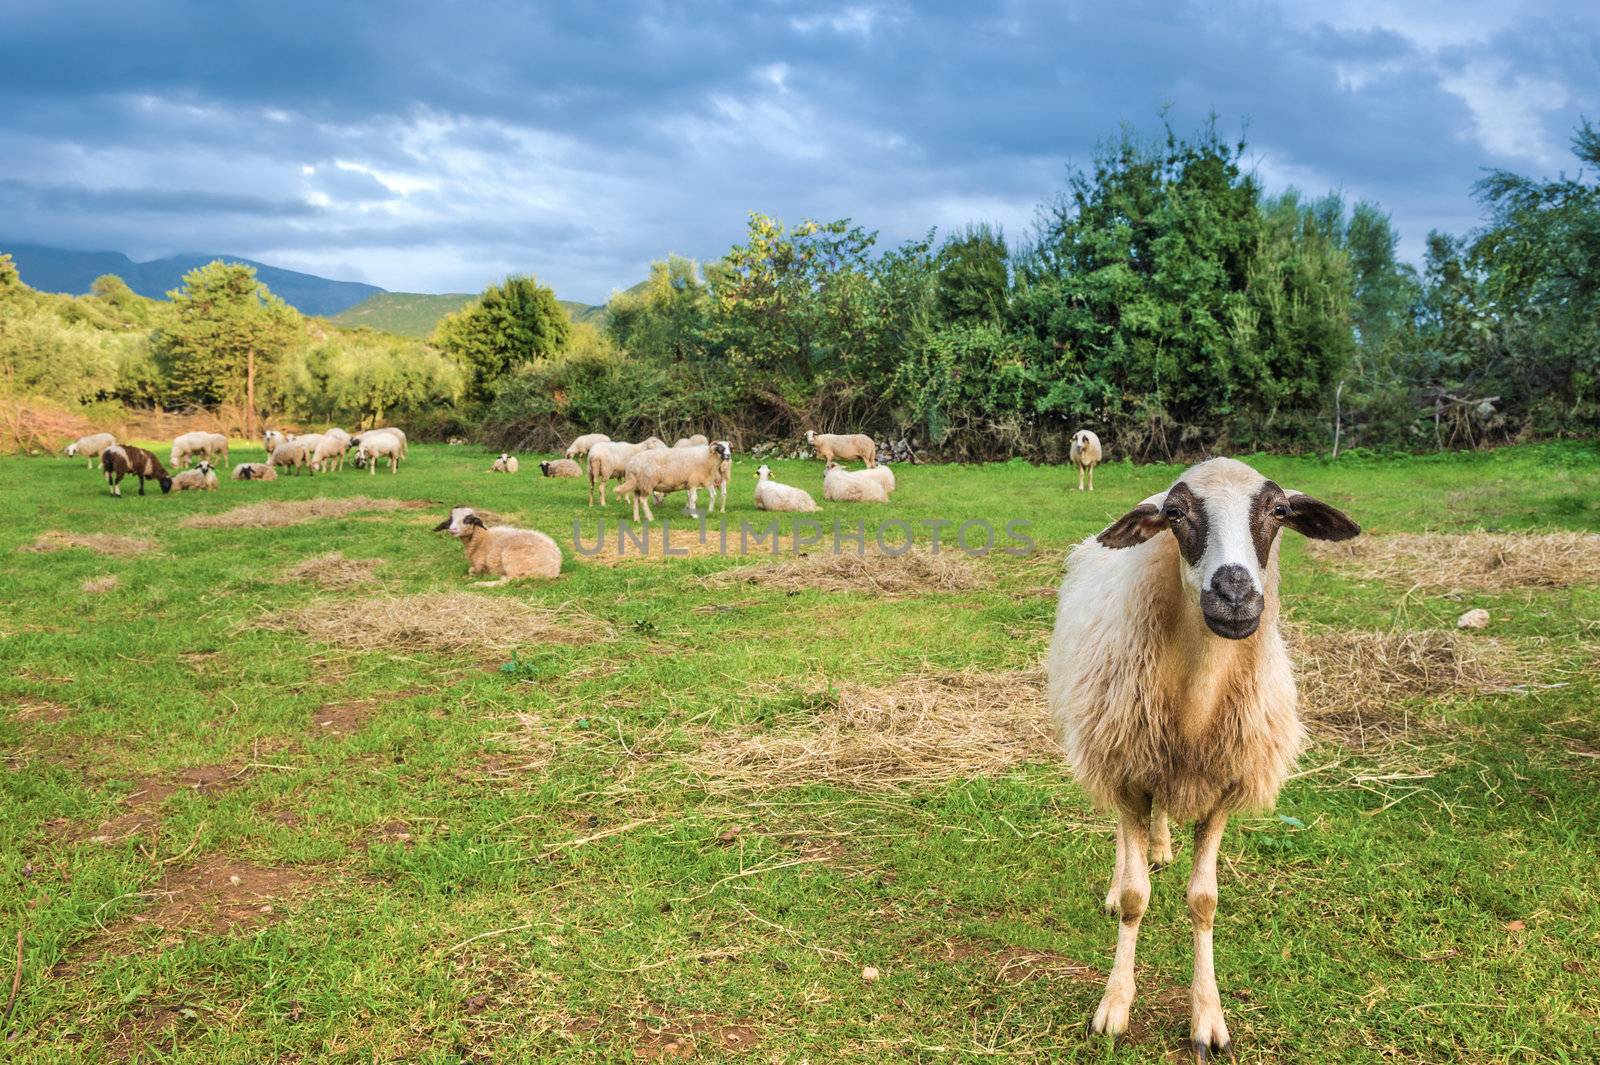 Sheep in pasture. One sheep looking at camera